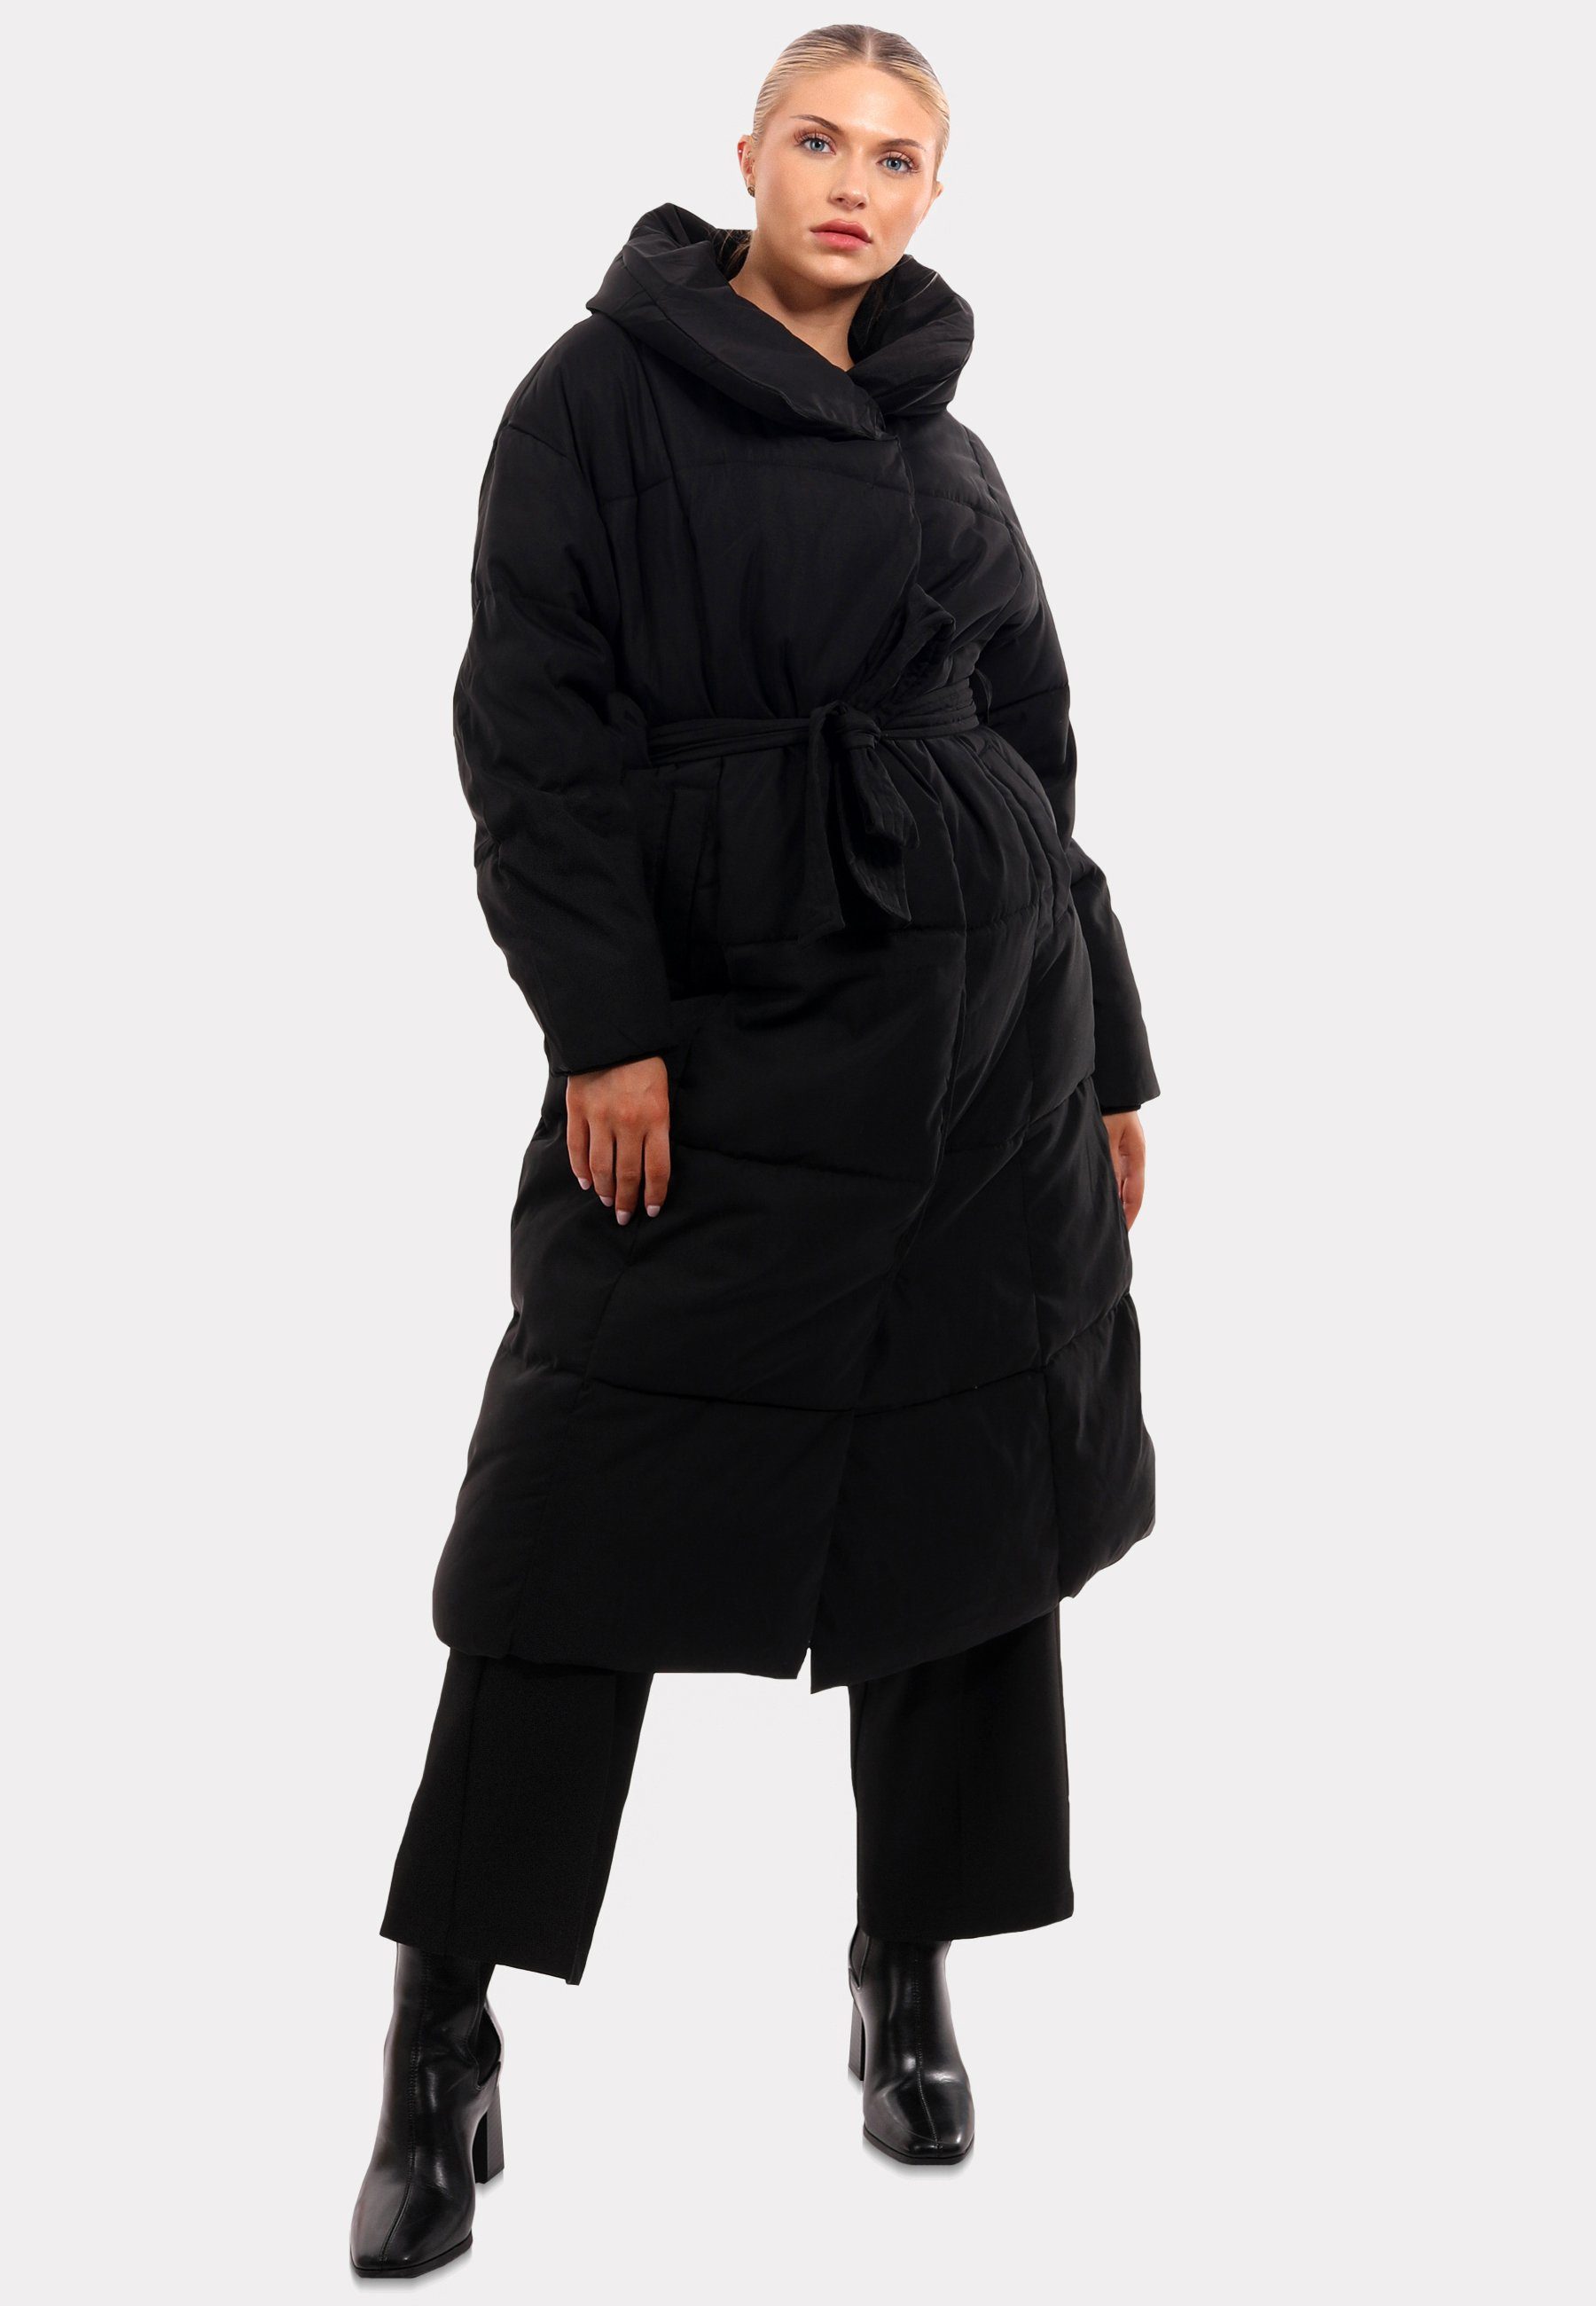 & Mantel mit YC Winterliches Stehkragen Wintermantel Stehkragen Fashion Design-Highlight: mit Markantem Style